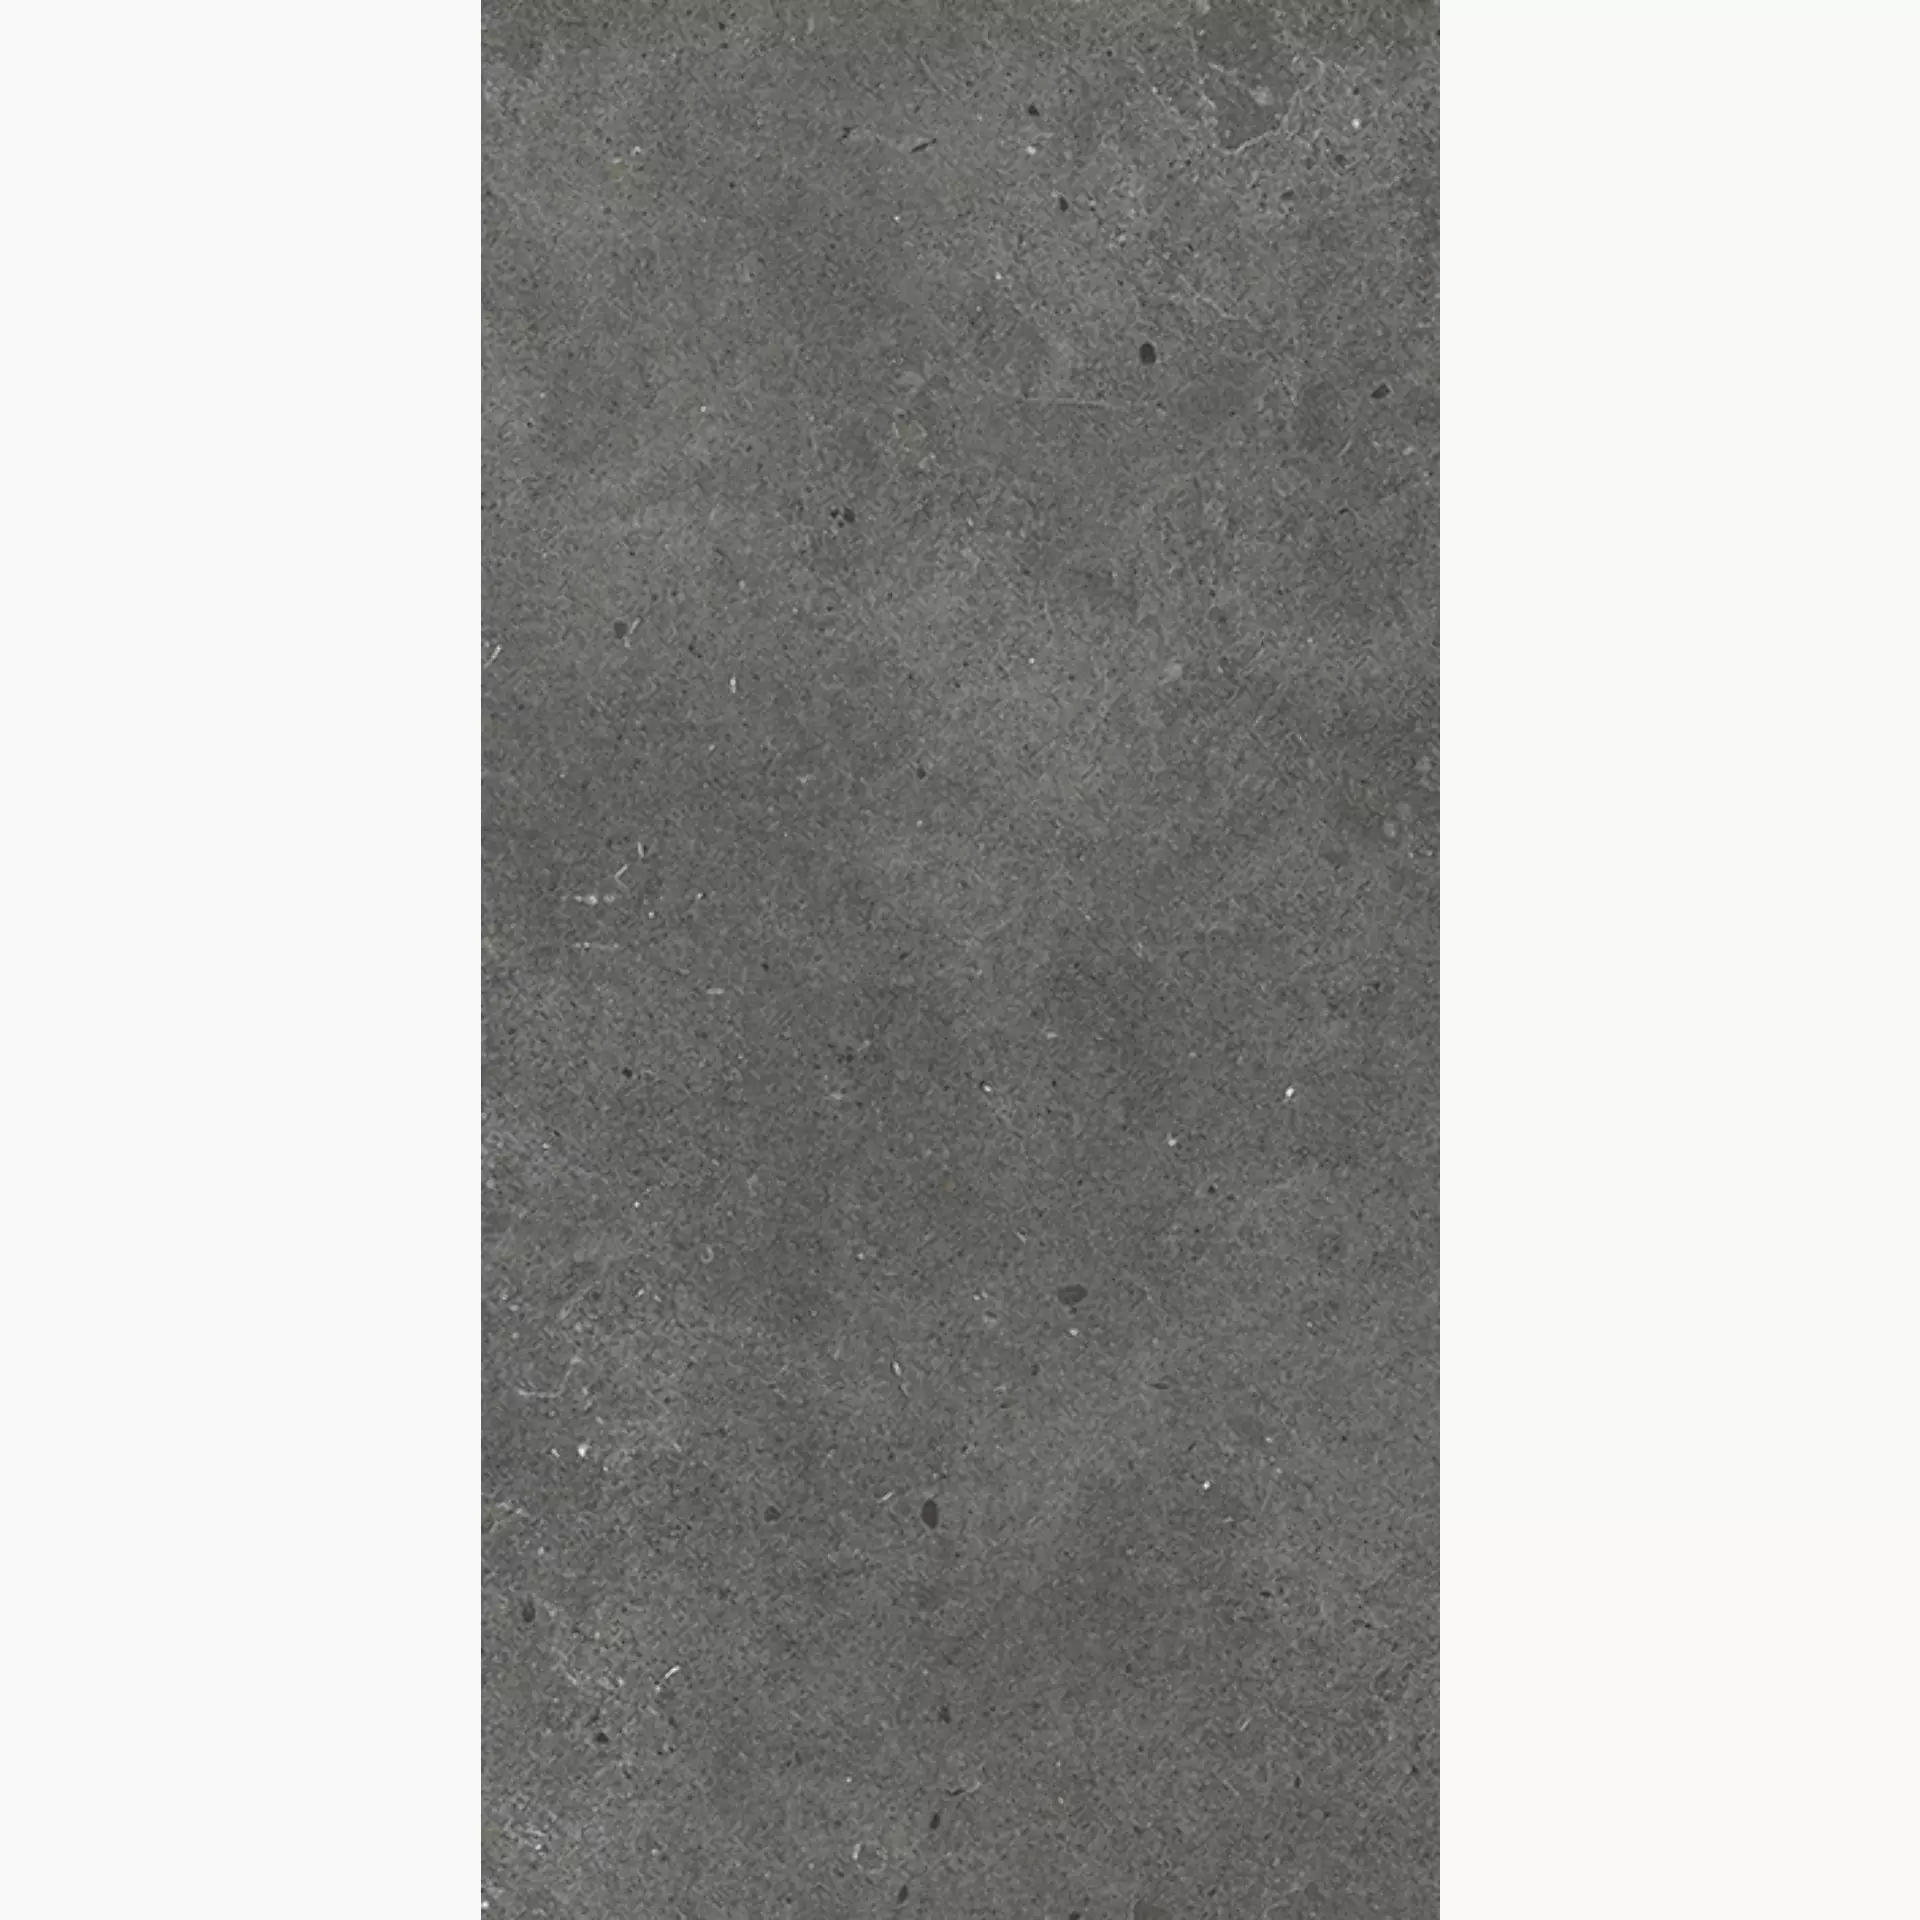 Wandfliese,Bodenfliese Villeroy & Boch Solid Tones Dark Concrete Antislip Dark Concrete 2521-PC62 rutschhemmend 30x60cm rektifiziert 10mm